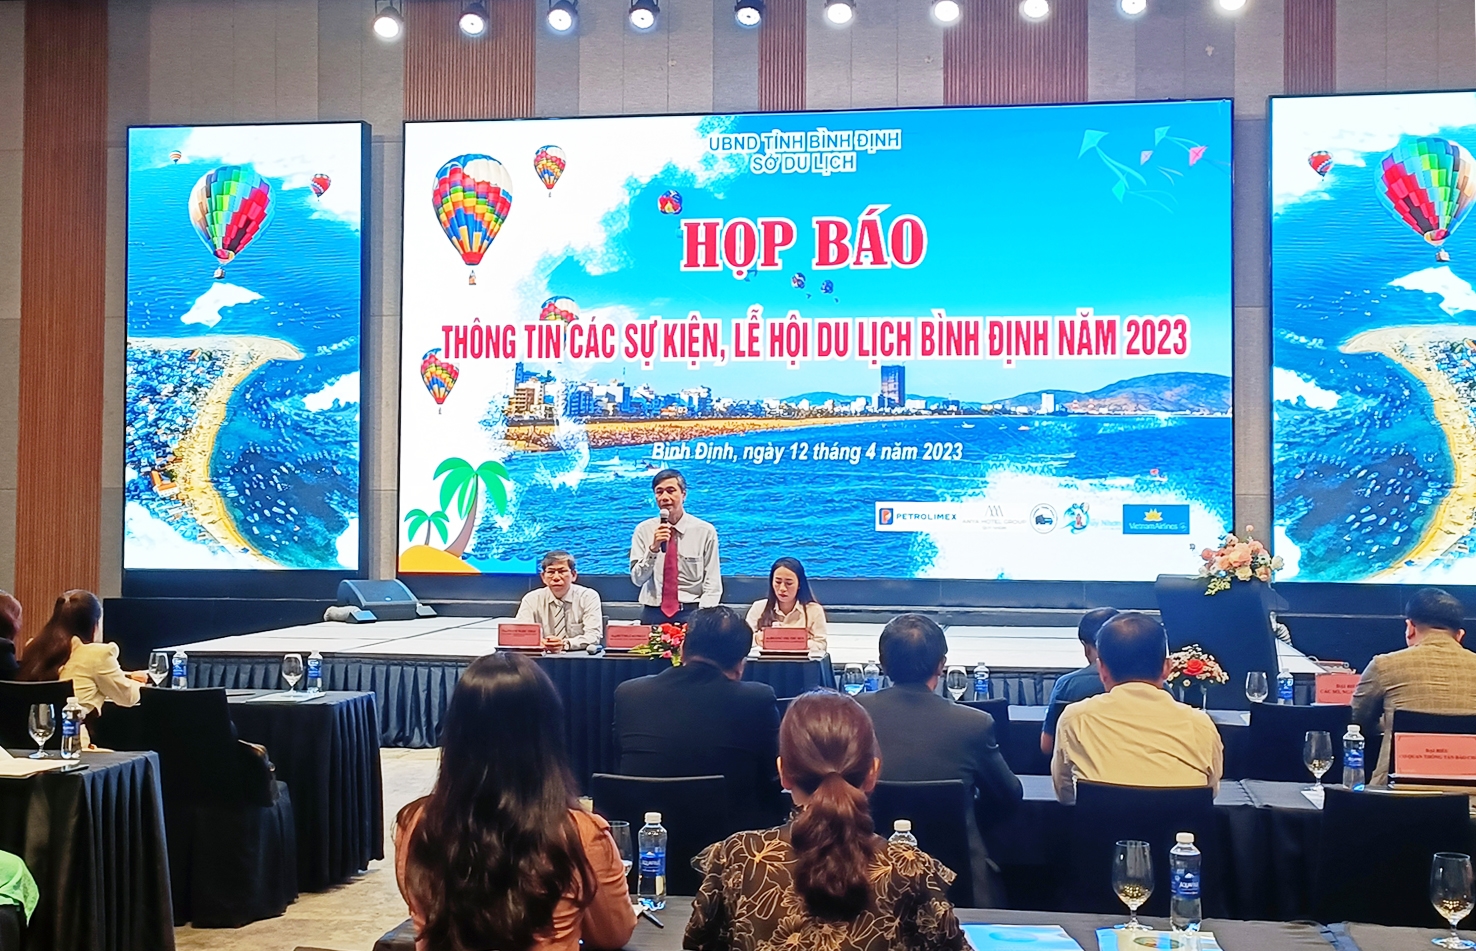 Ông Huỳnh Cao Nhất, Phó Giám đốc SỞ Du lịch Bình Định thông tin cho báo chí về Lê hội du lịch năm 2023